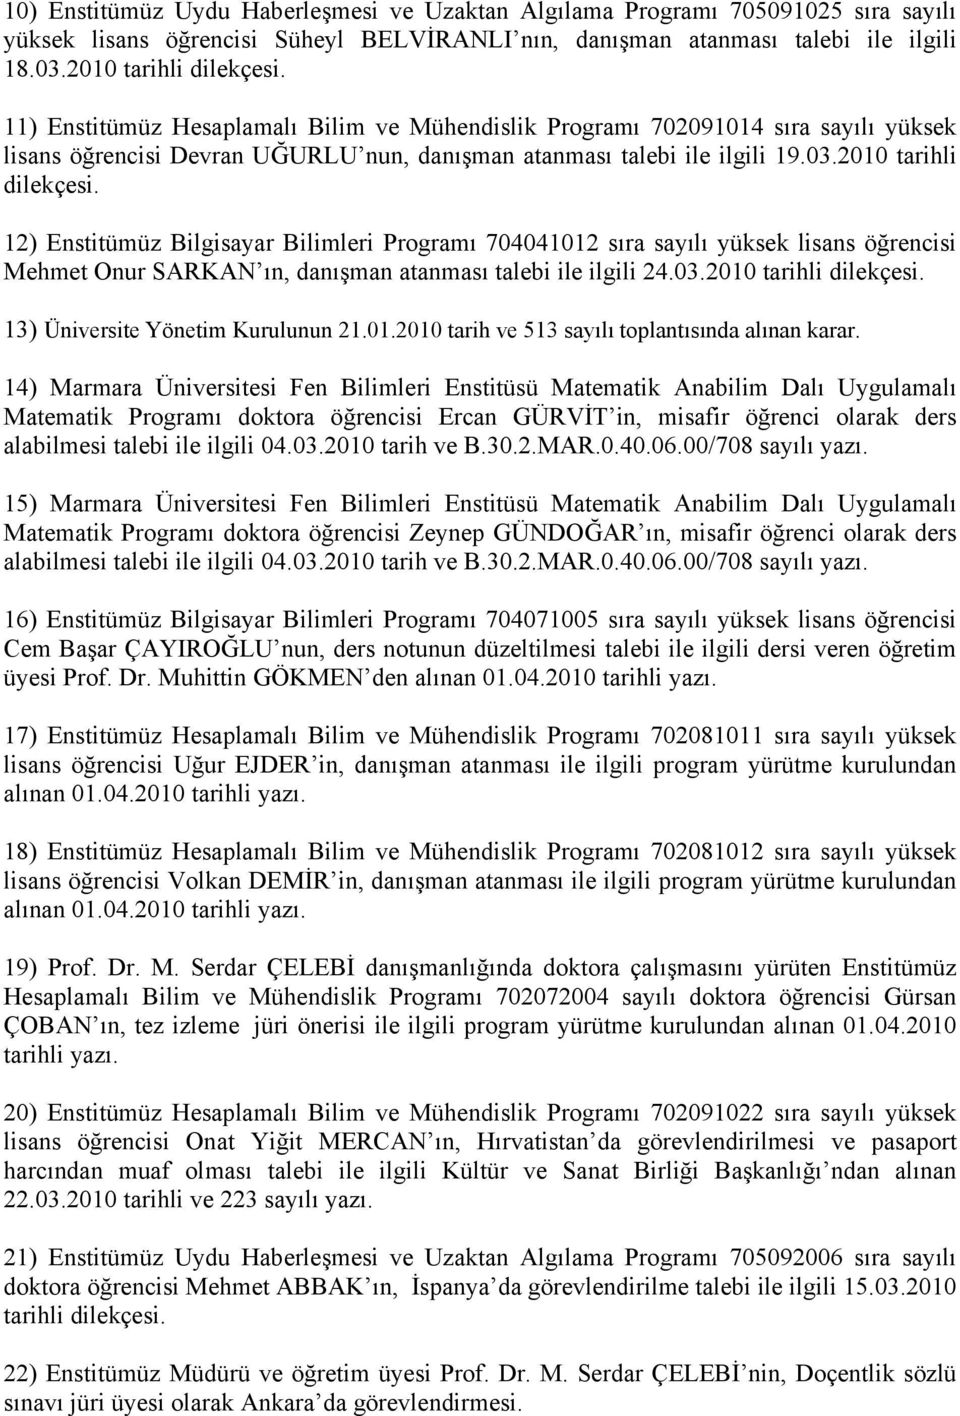 12) Enstitümüz Bilgisayar Bilimleri Programı 704041012 sıra sayılı yüksek lisans öğrencisi Mehmet Onur SARKAN ın, danışman atanması talebi ile ilgili 24.03.2010 tarihli dilekçesi.